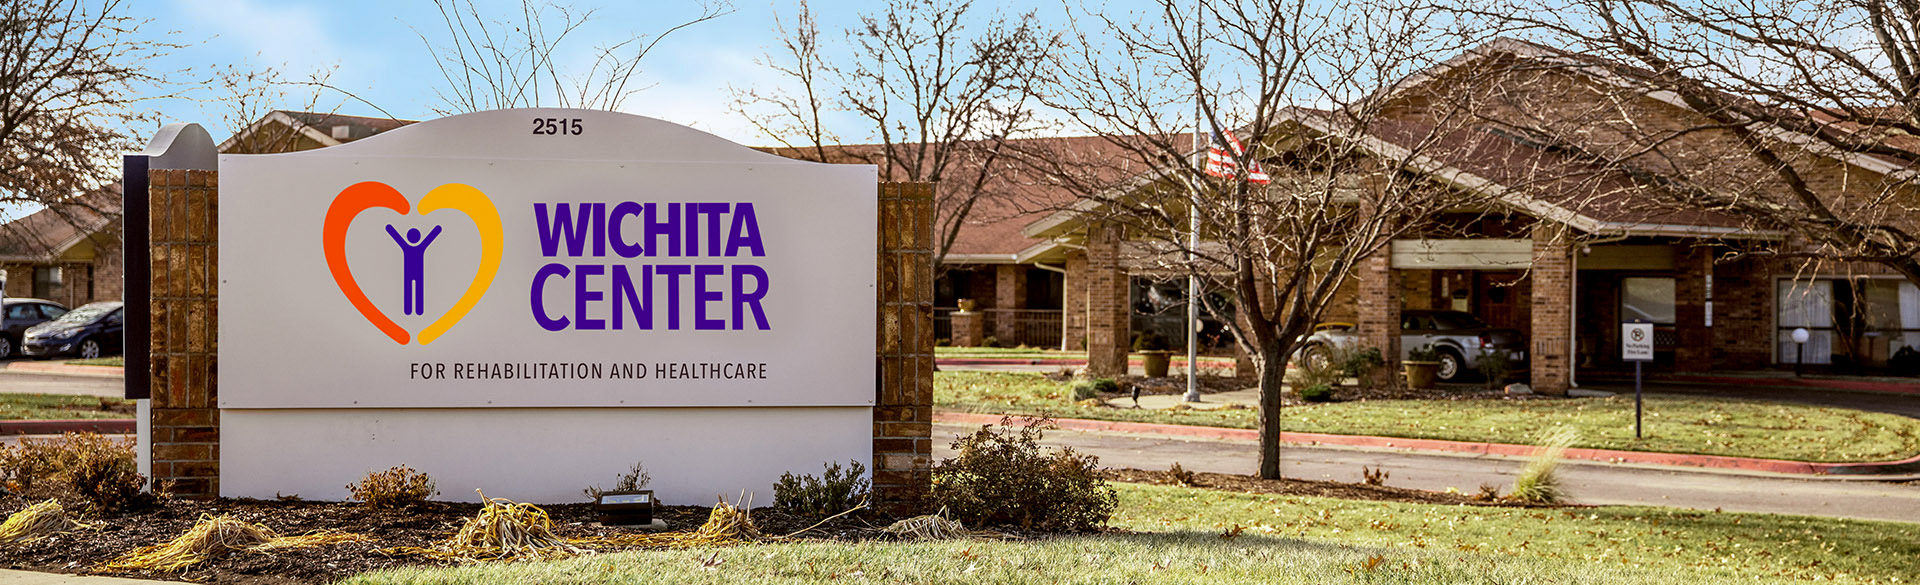 Wichita Center Centers Health Care Nursing and RehabilitationContact